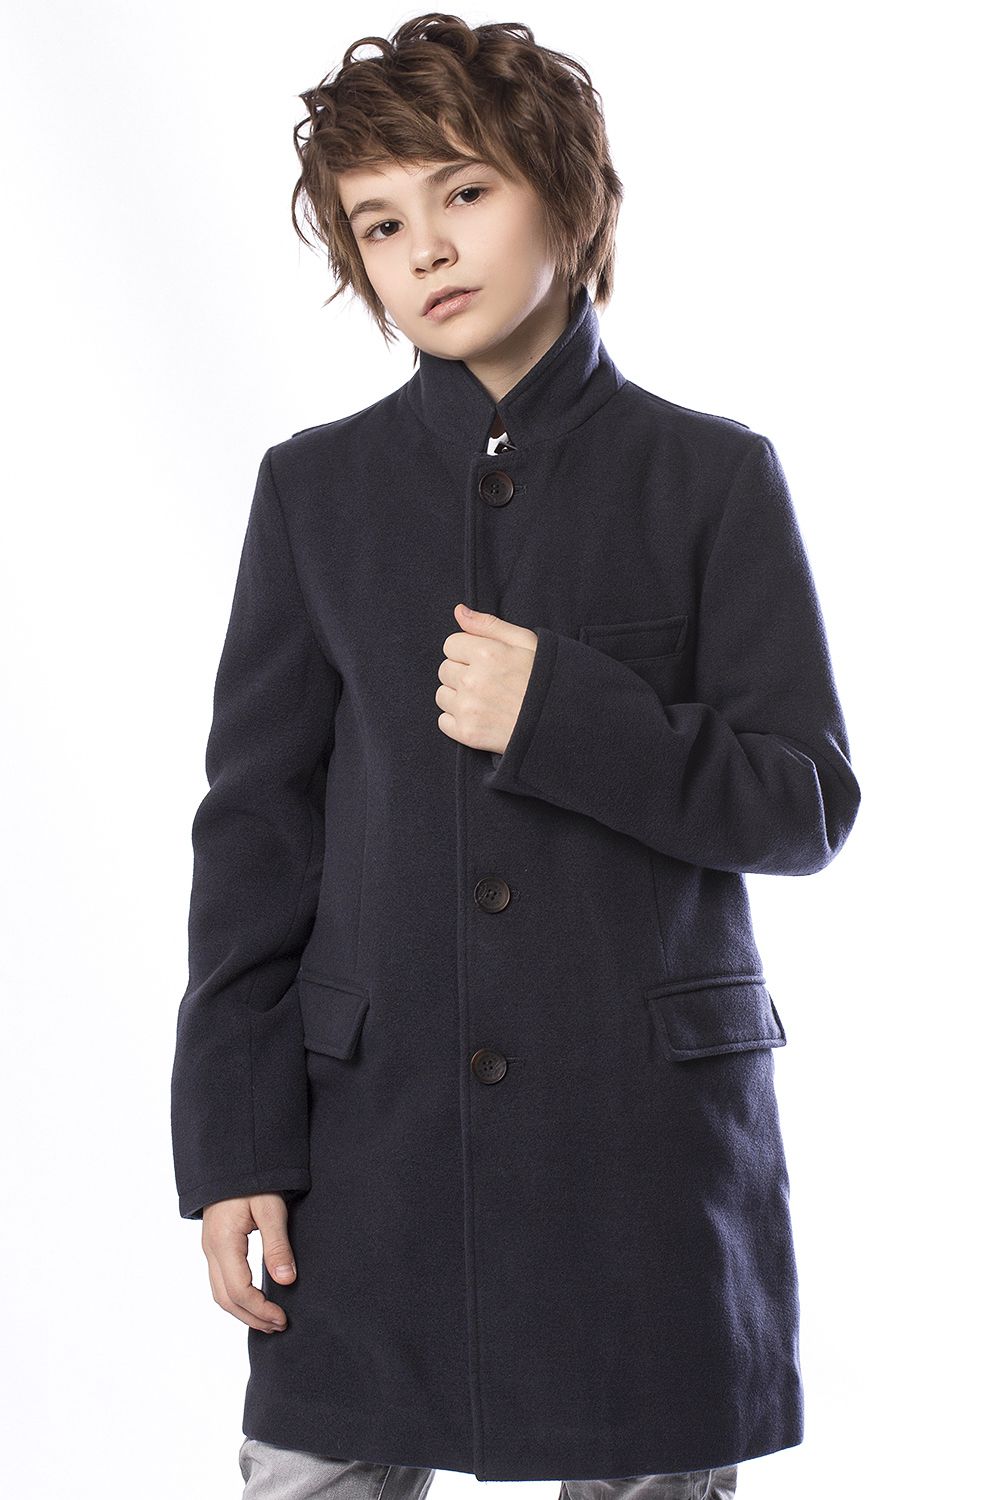 Пальто для подростка мальчика. Ronnie Kay пальто. Пальто подростковое для мальчика. Черное пальто для мальчиков.